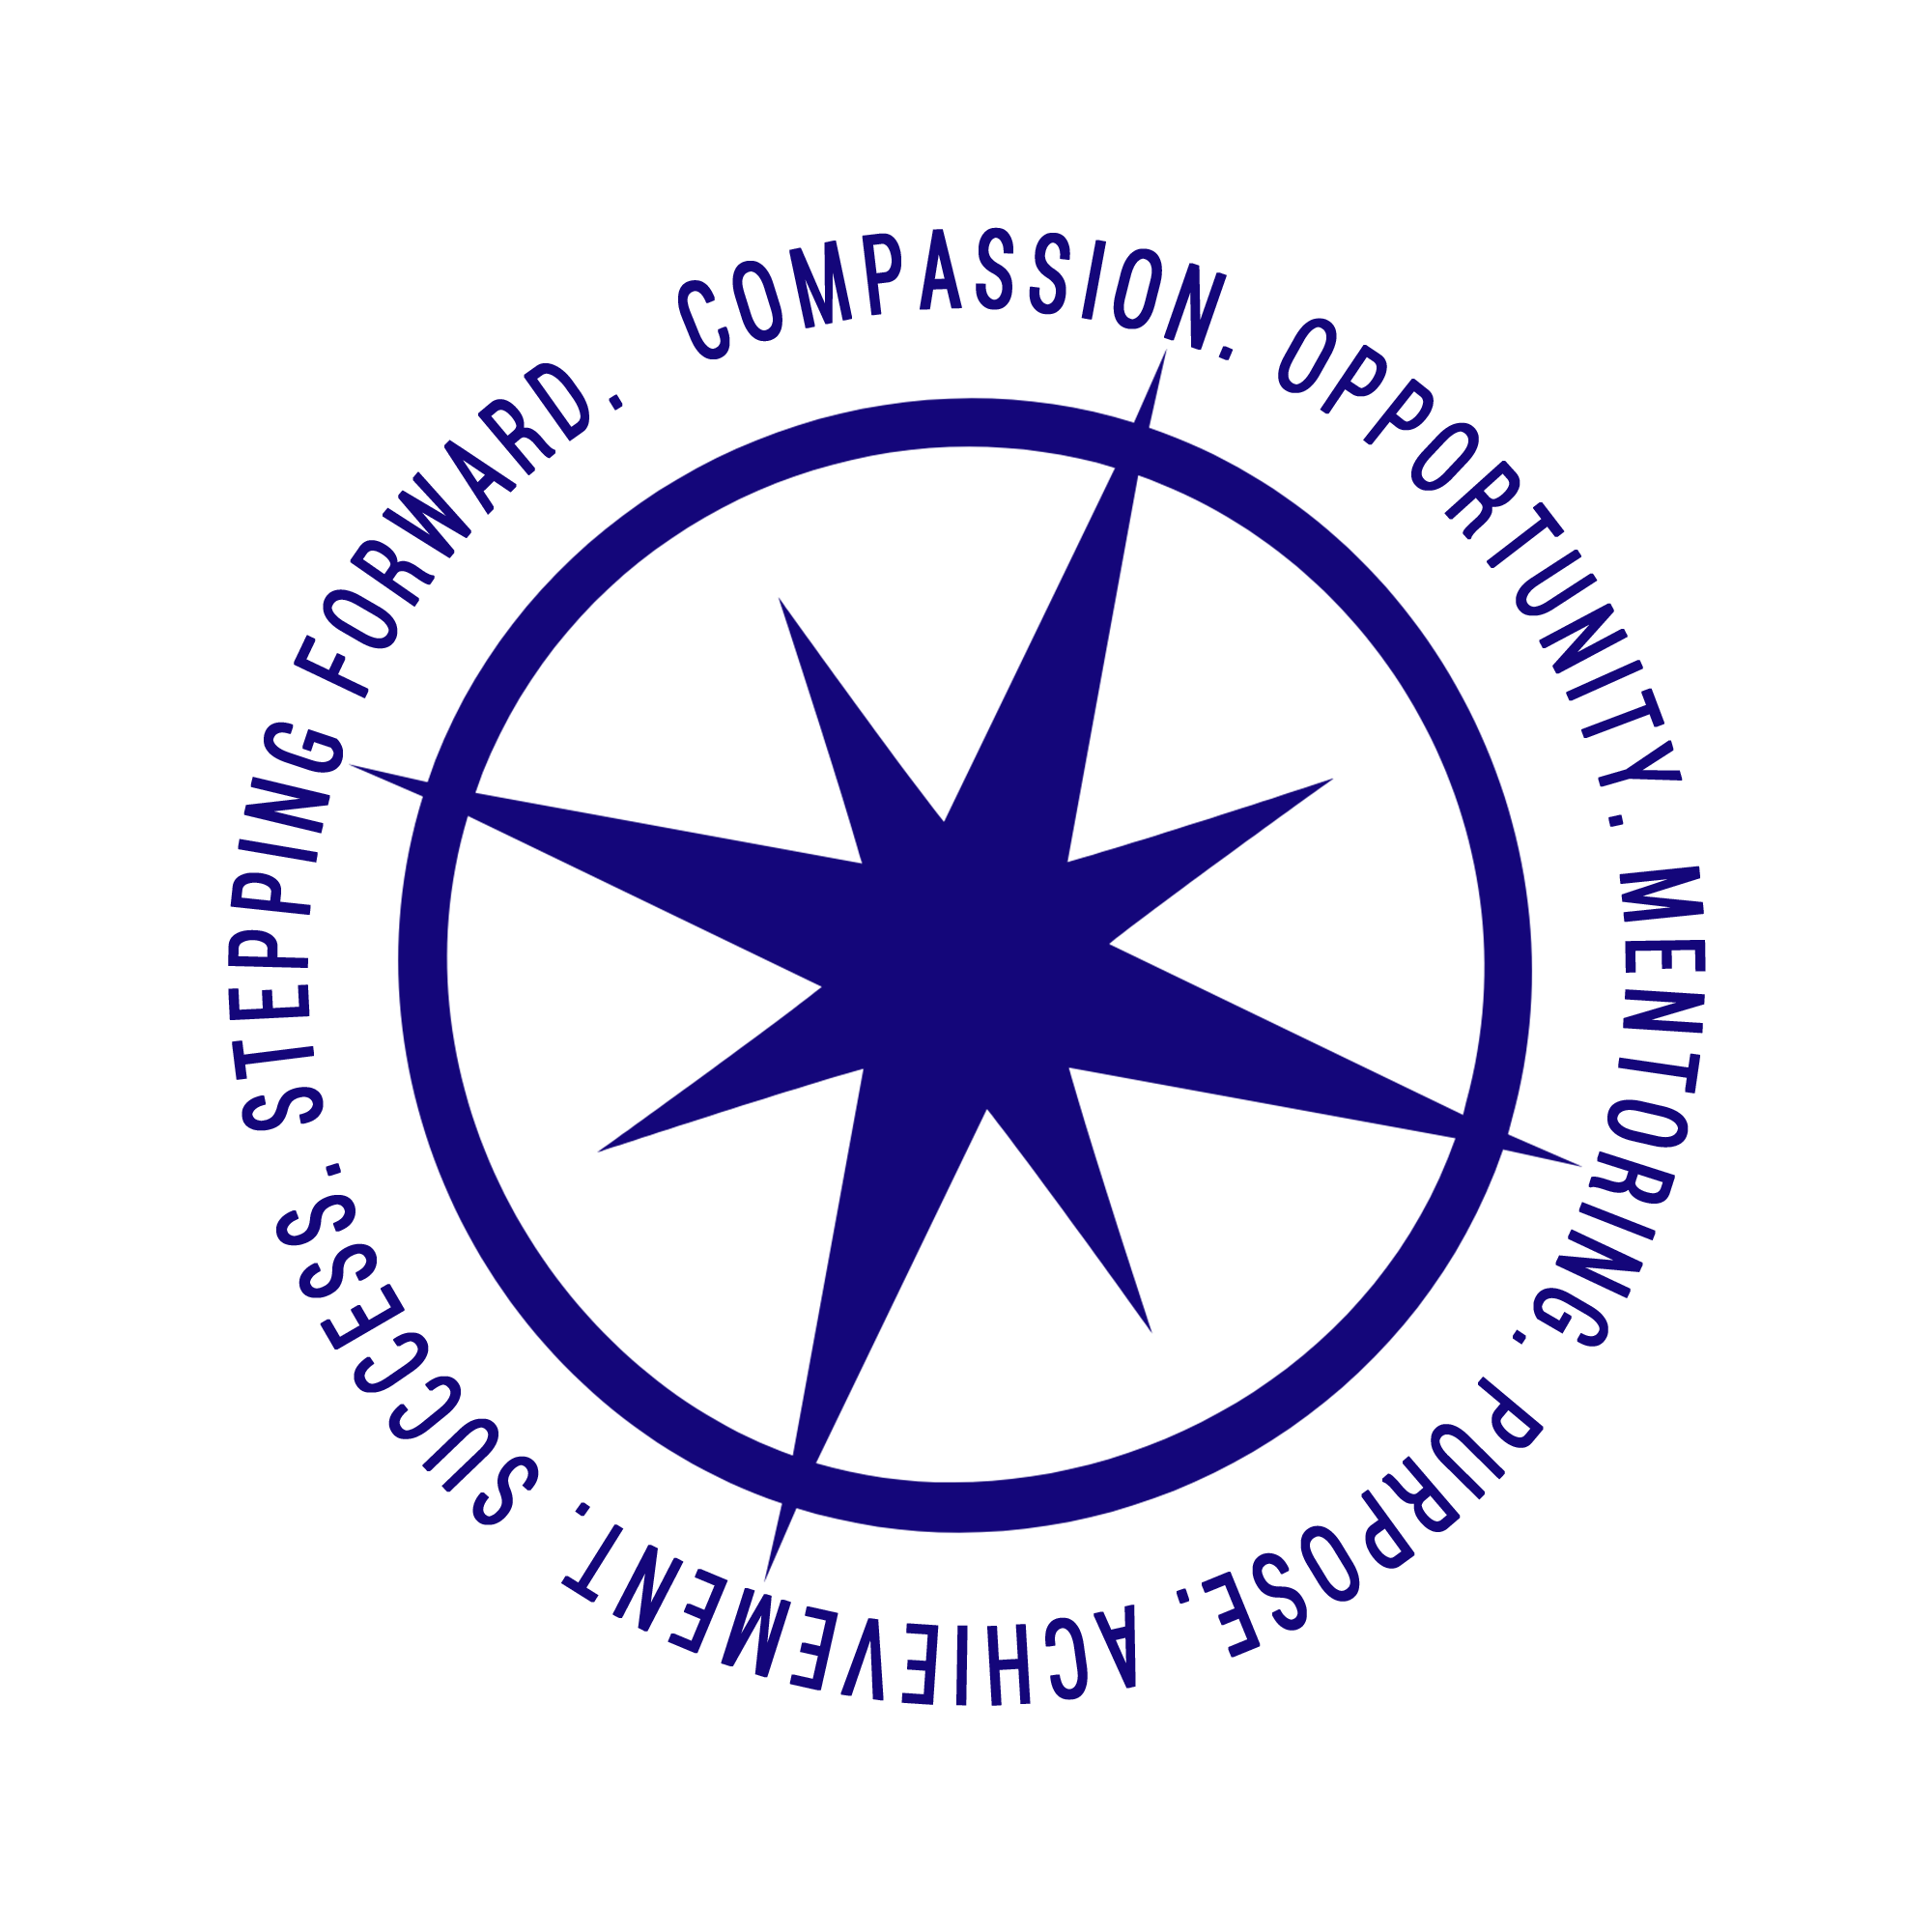 COMPASS logo